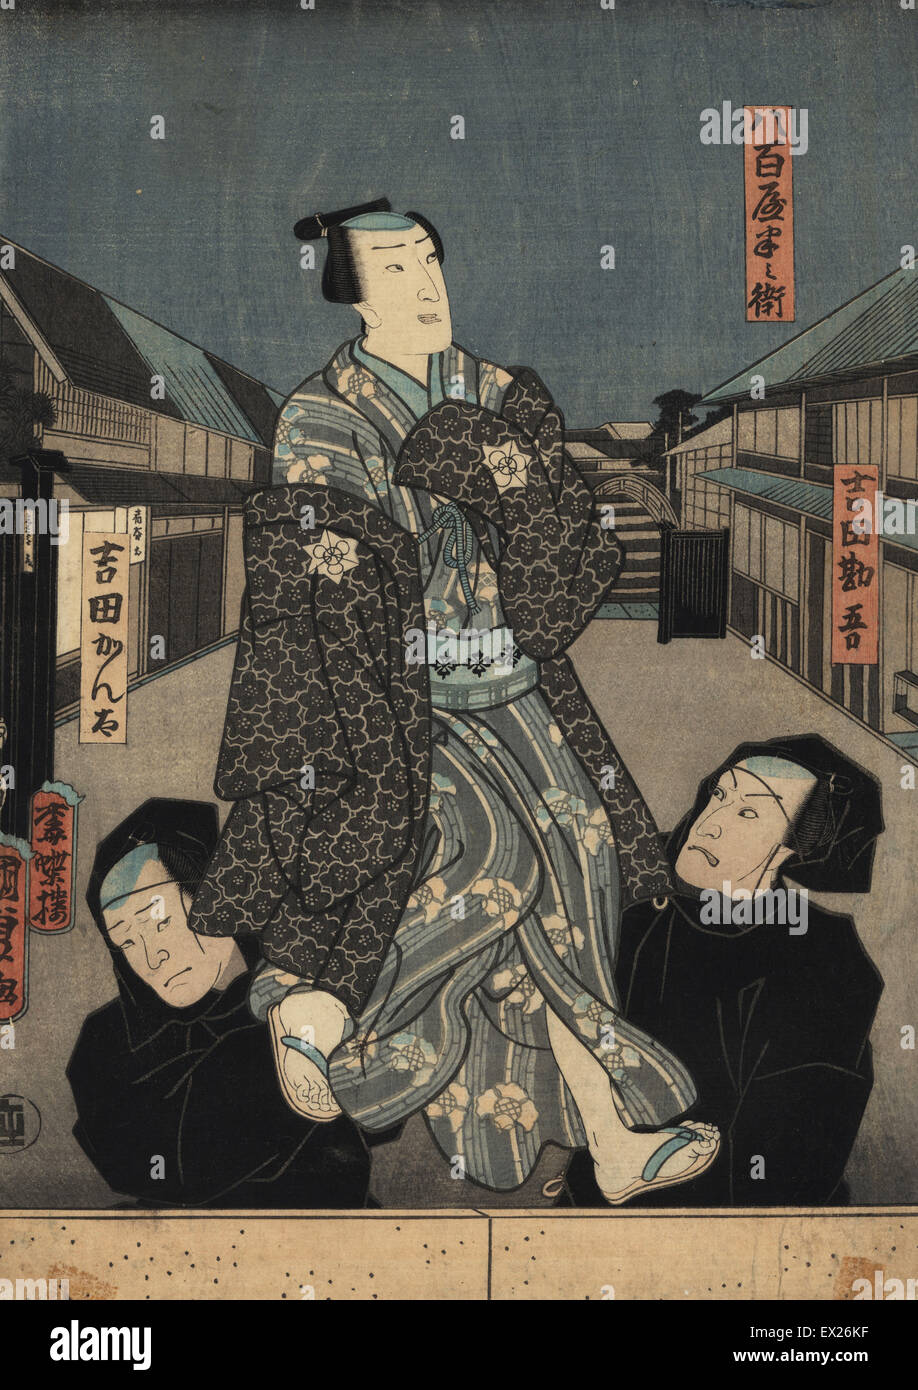 Marionette in Kimono von zwei Bunraku Puppenspieler in schwarzen Roben manipuliert. Holzschnitt Ukiyo-e Drucken von Utagawa Kunisada II, Tokio, 1850er Jahre. Aus einer Reihe von Abbildungen der beliebten Bunraku Theaterstücke, diese zeigen die Yaoya Oshichi. Stockfoto